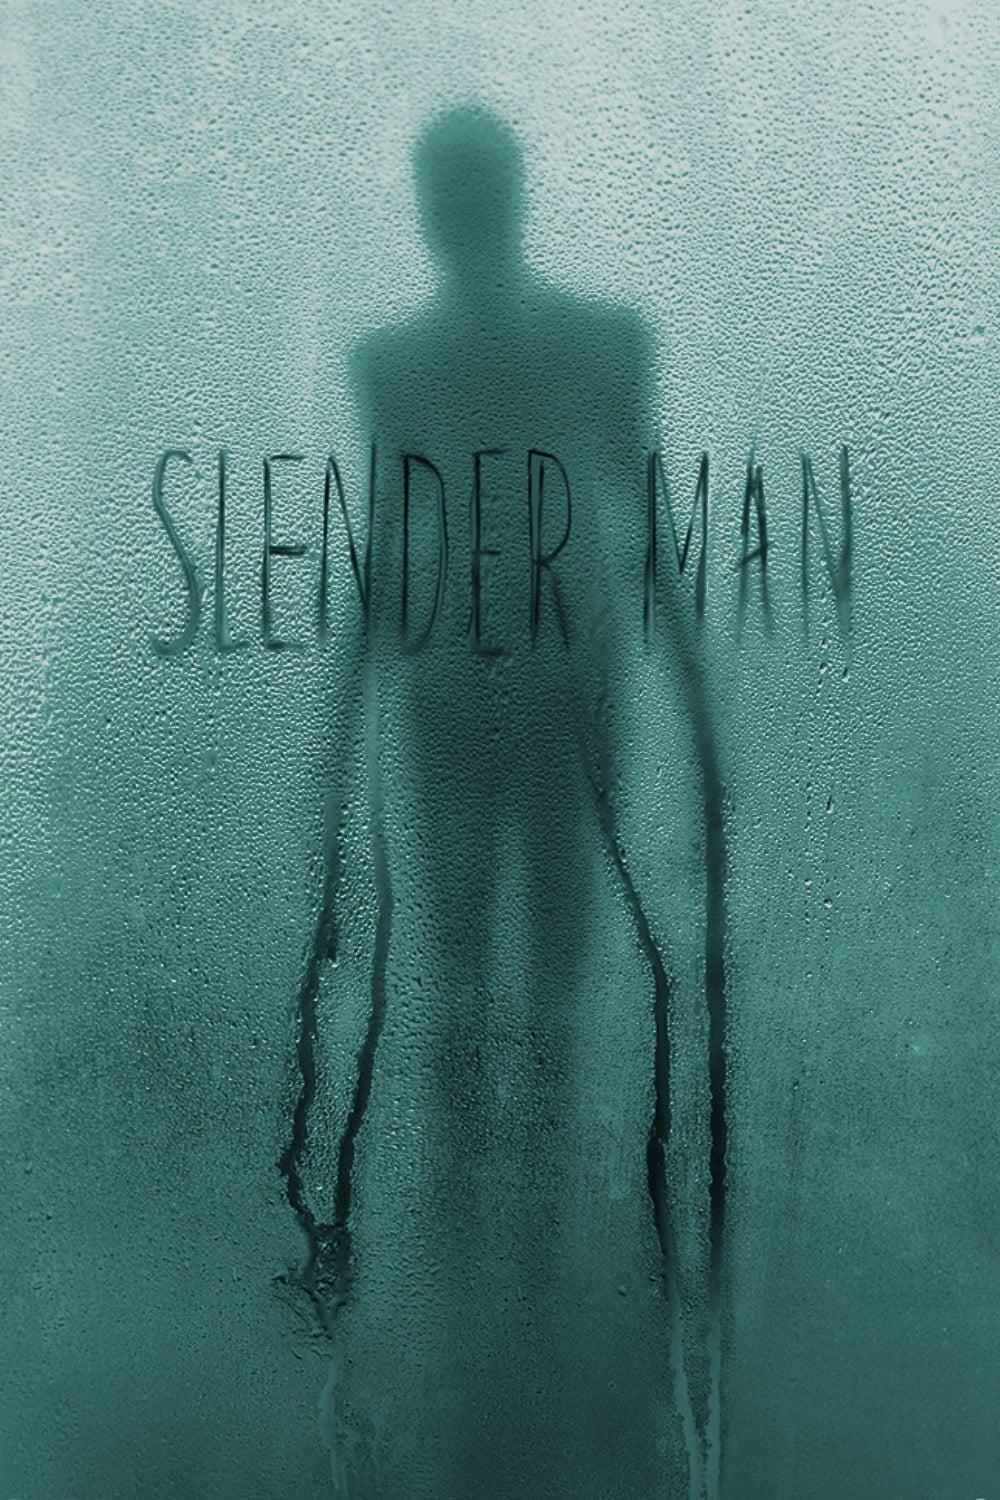 Slender Man poster